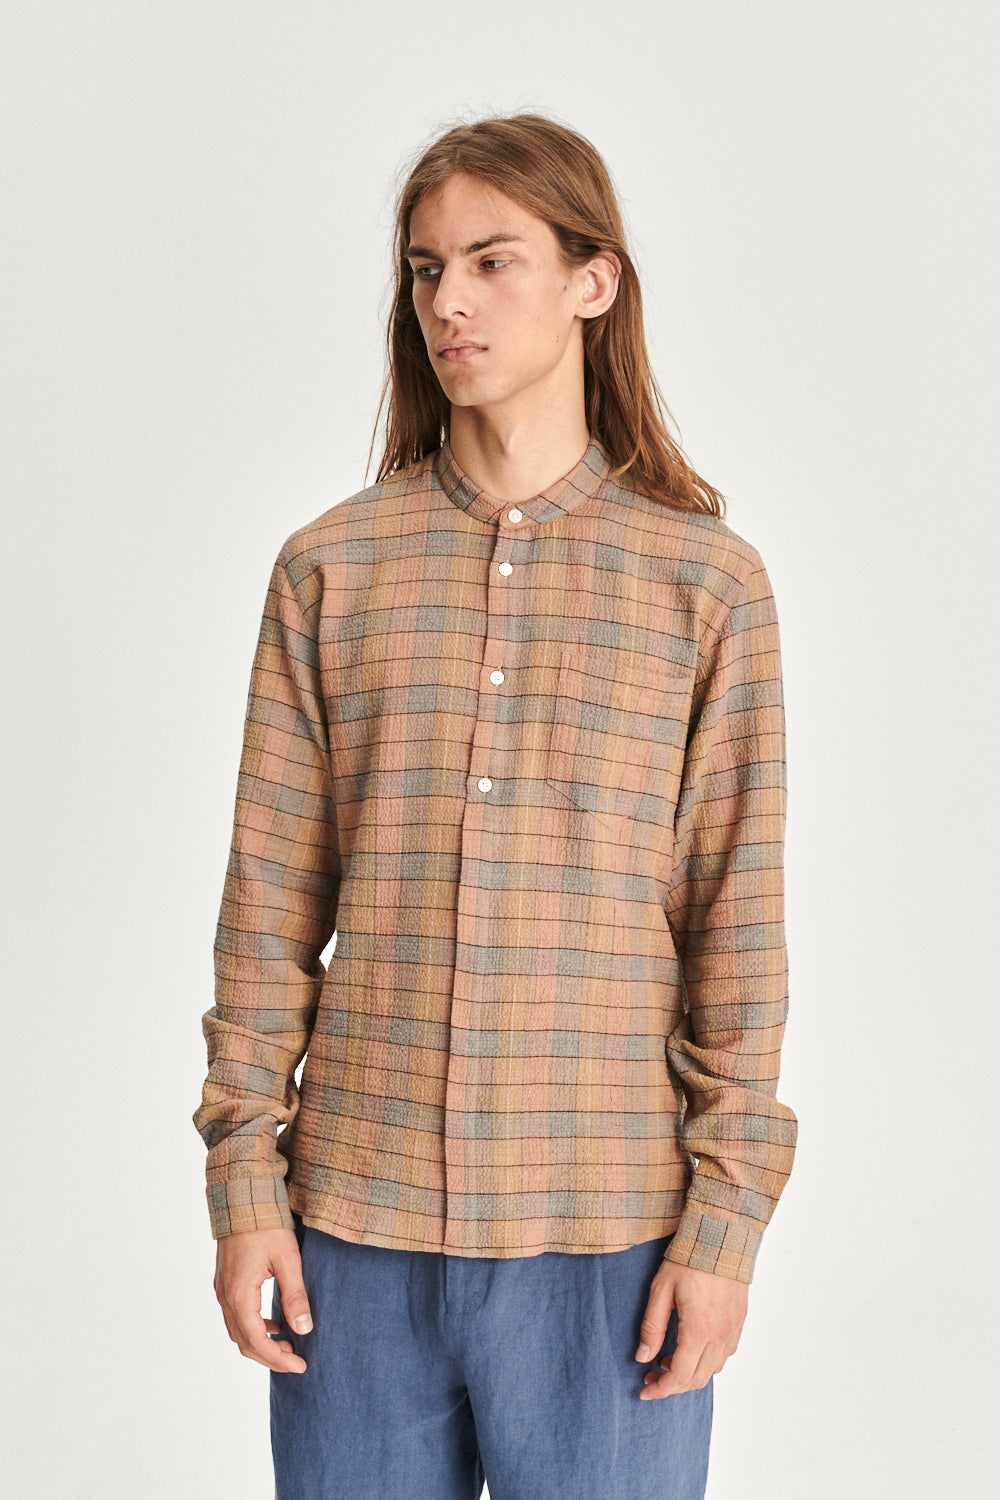 Zen Grandad Collar Shirt in the Finest Portuguese Cashmere Cotton Checkered Seersucker